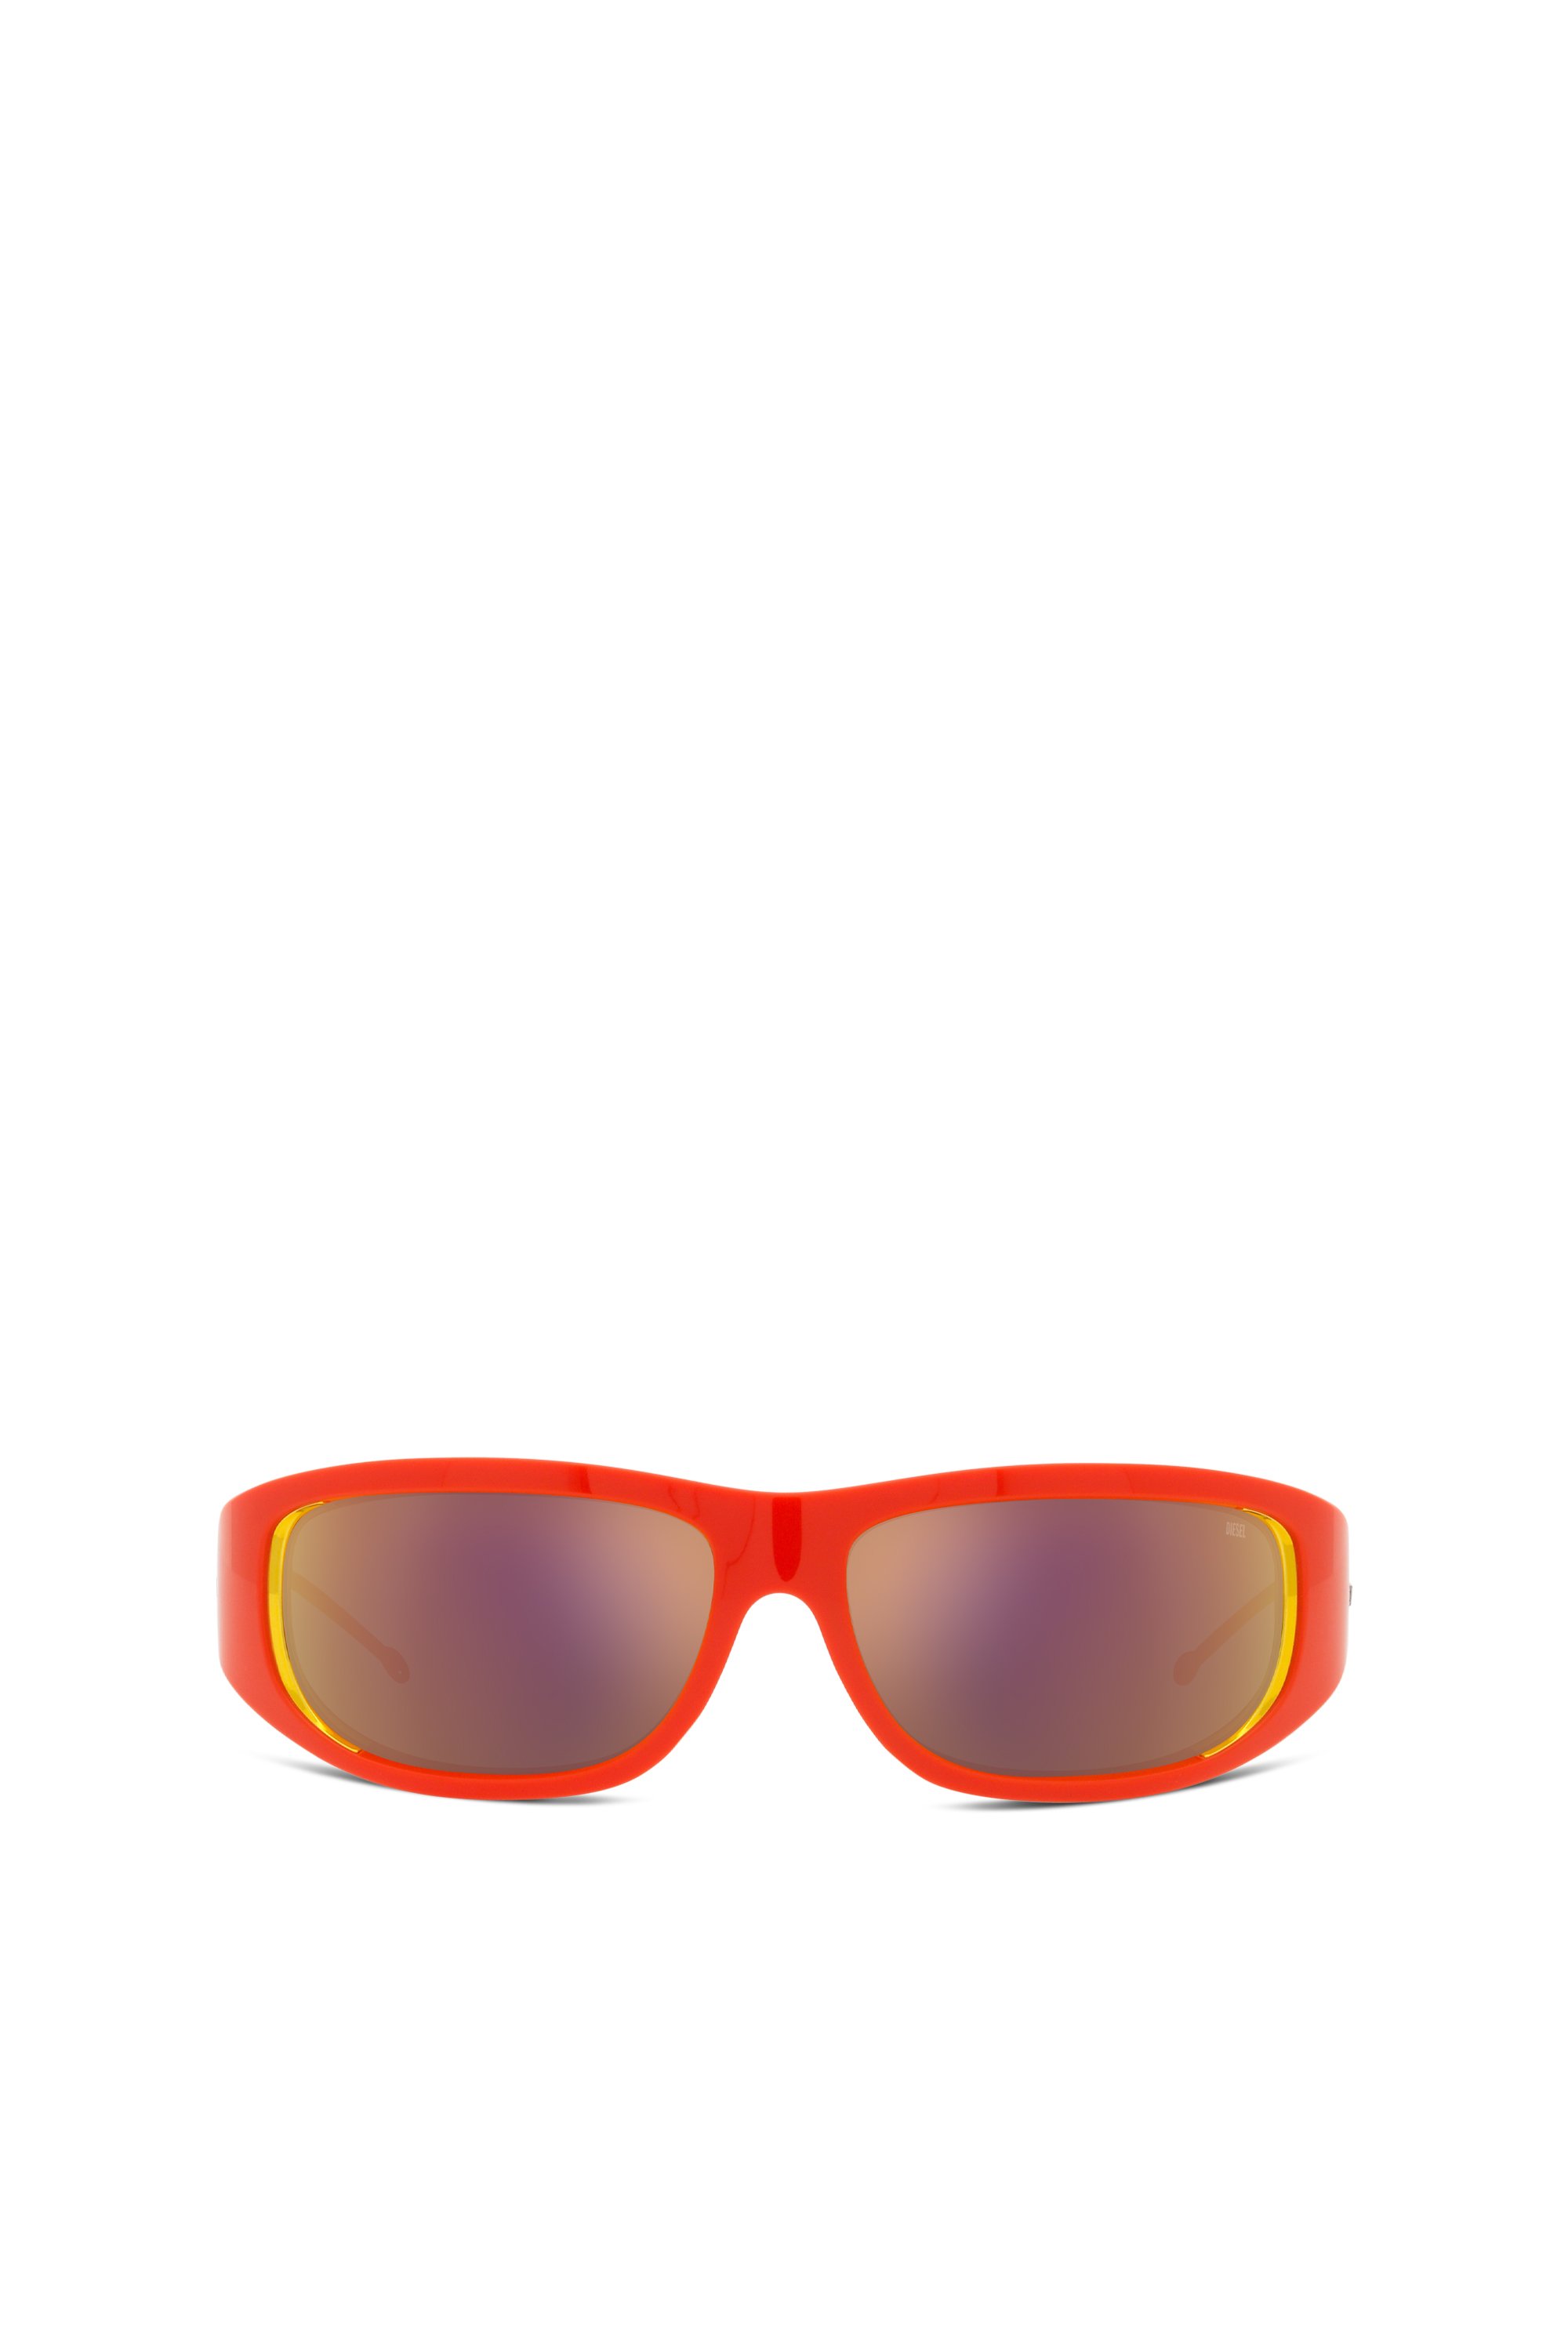 Diesel - Gafas con estilo envolvente - Gafas de sol - Unisex - Naranja